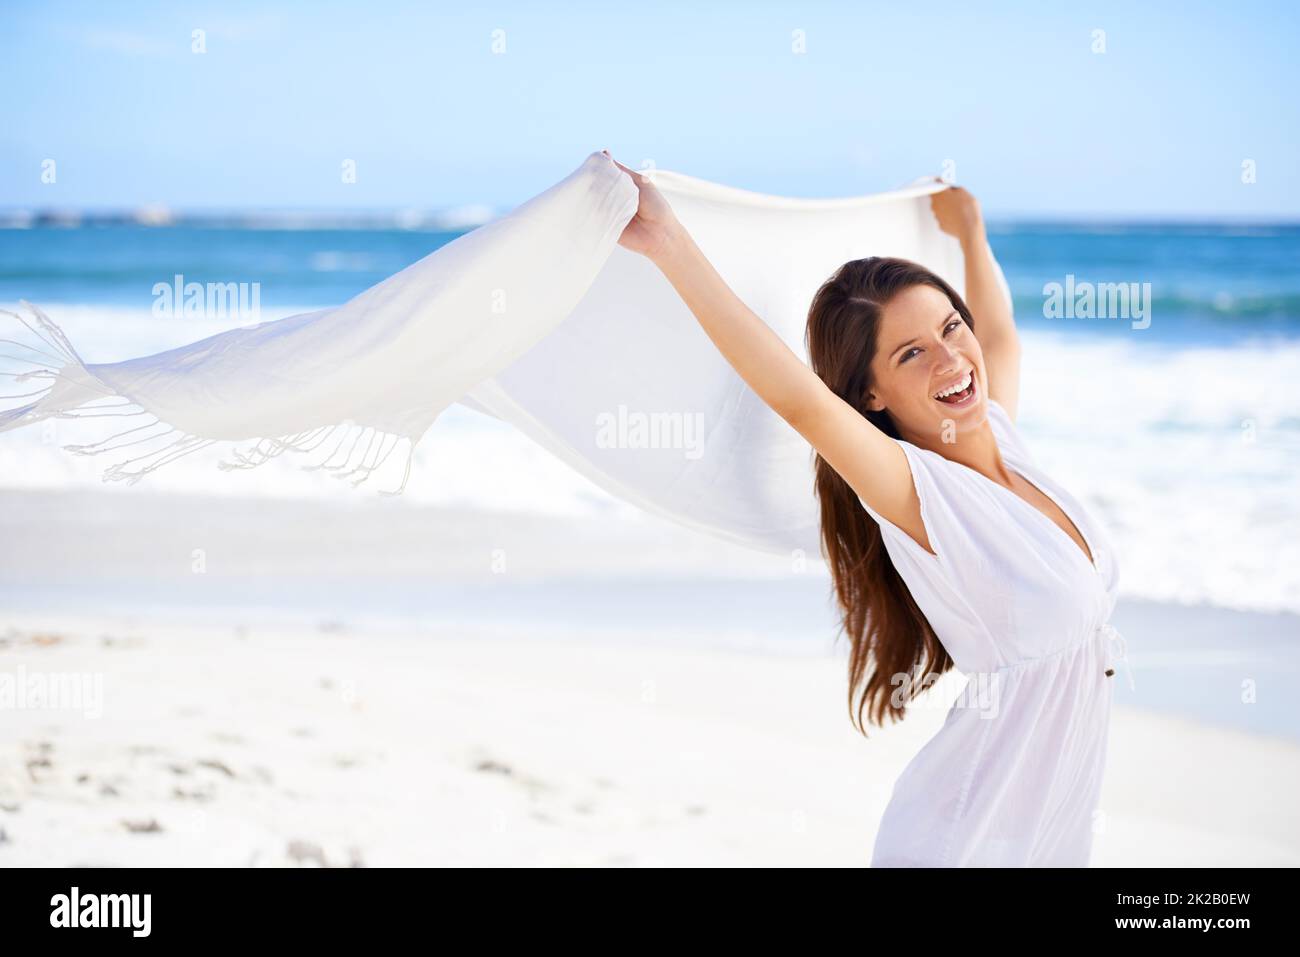 Loslassen und sich im Freien Vergnügen. Eine wunderschöne junge Frau am Strand, die einen weißen Schal hält, der im Wind weht. Stockfoto